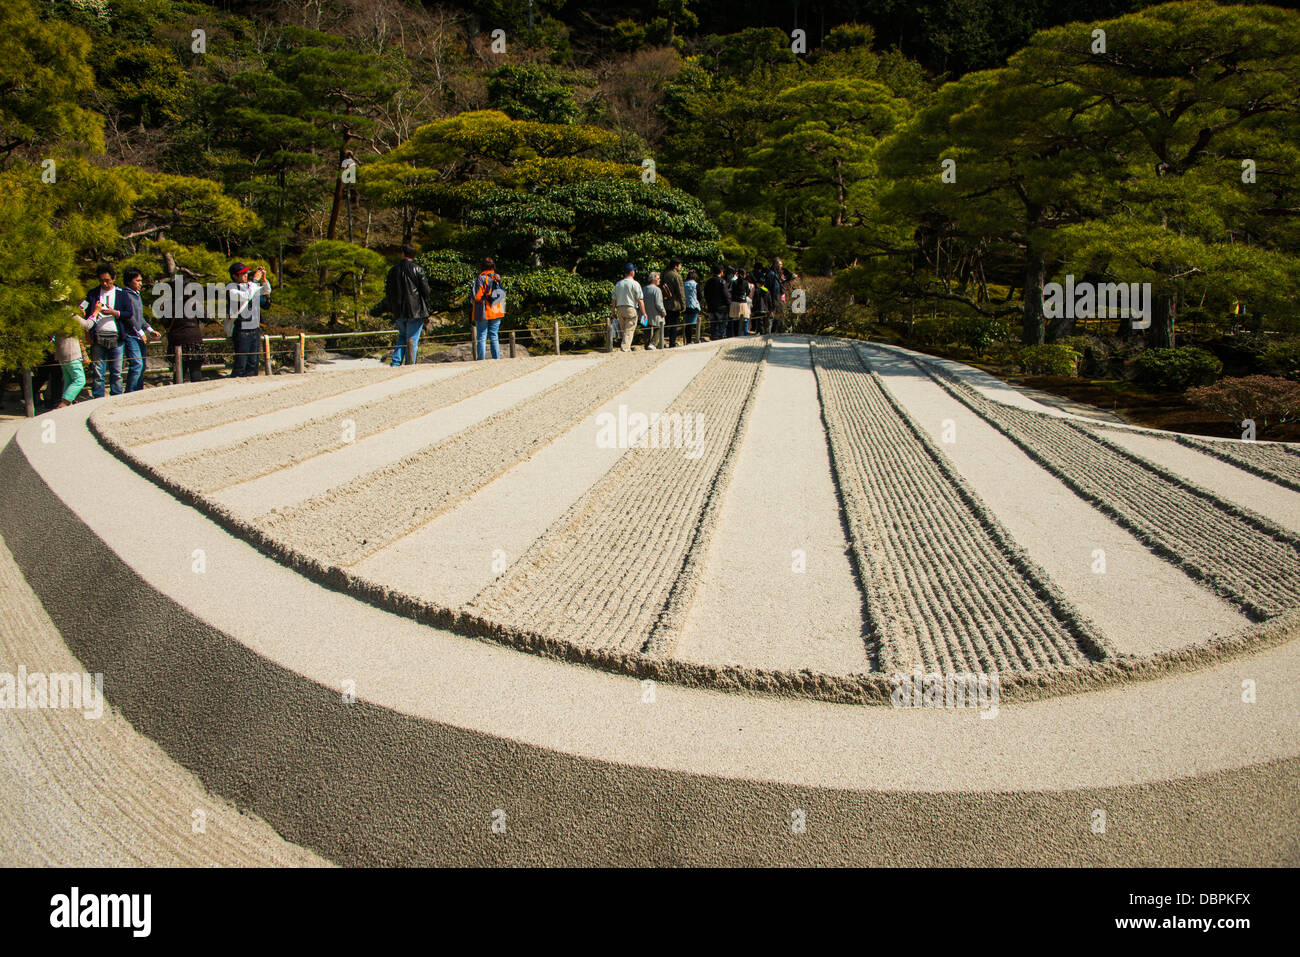 Structure du sable dans le Ginkaku-ji Temple Zen, UNESCO World Heritage Site, Kyoto, Japon, Asie Banque D'Images